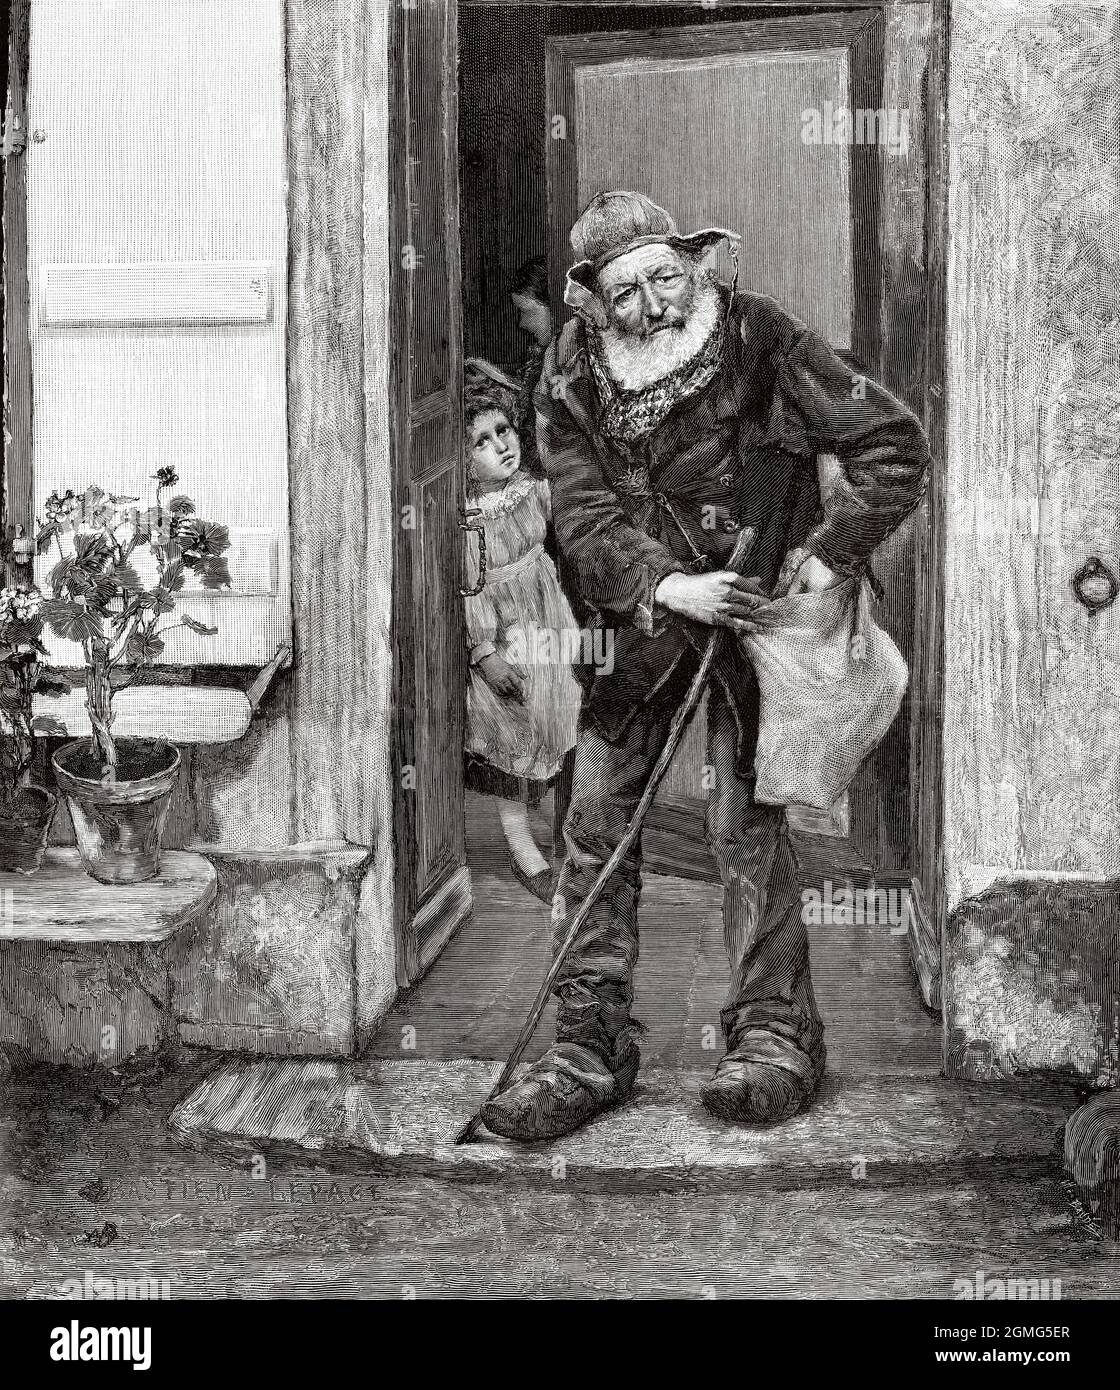 Le mendiant, peinture de Jules Bastien-Lepage (1848-1884) est un peintre naturaliste français. Ancienne illustration gravée du XIXe siècle de la Ilustración Artística 1882 Banque D'Images